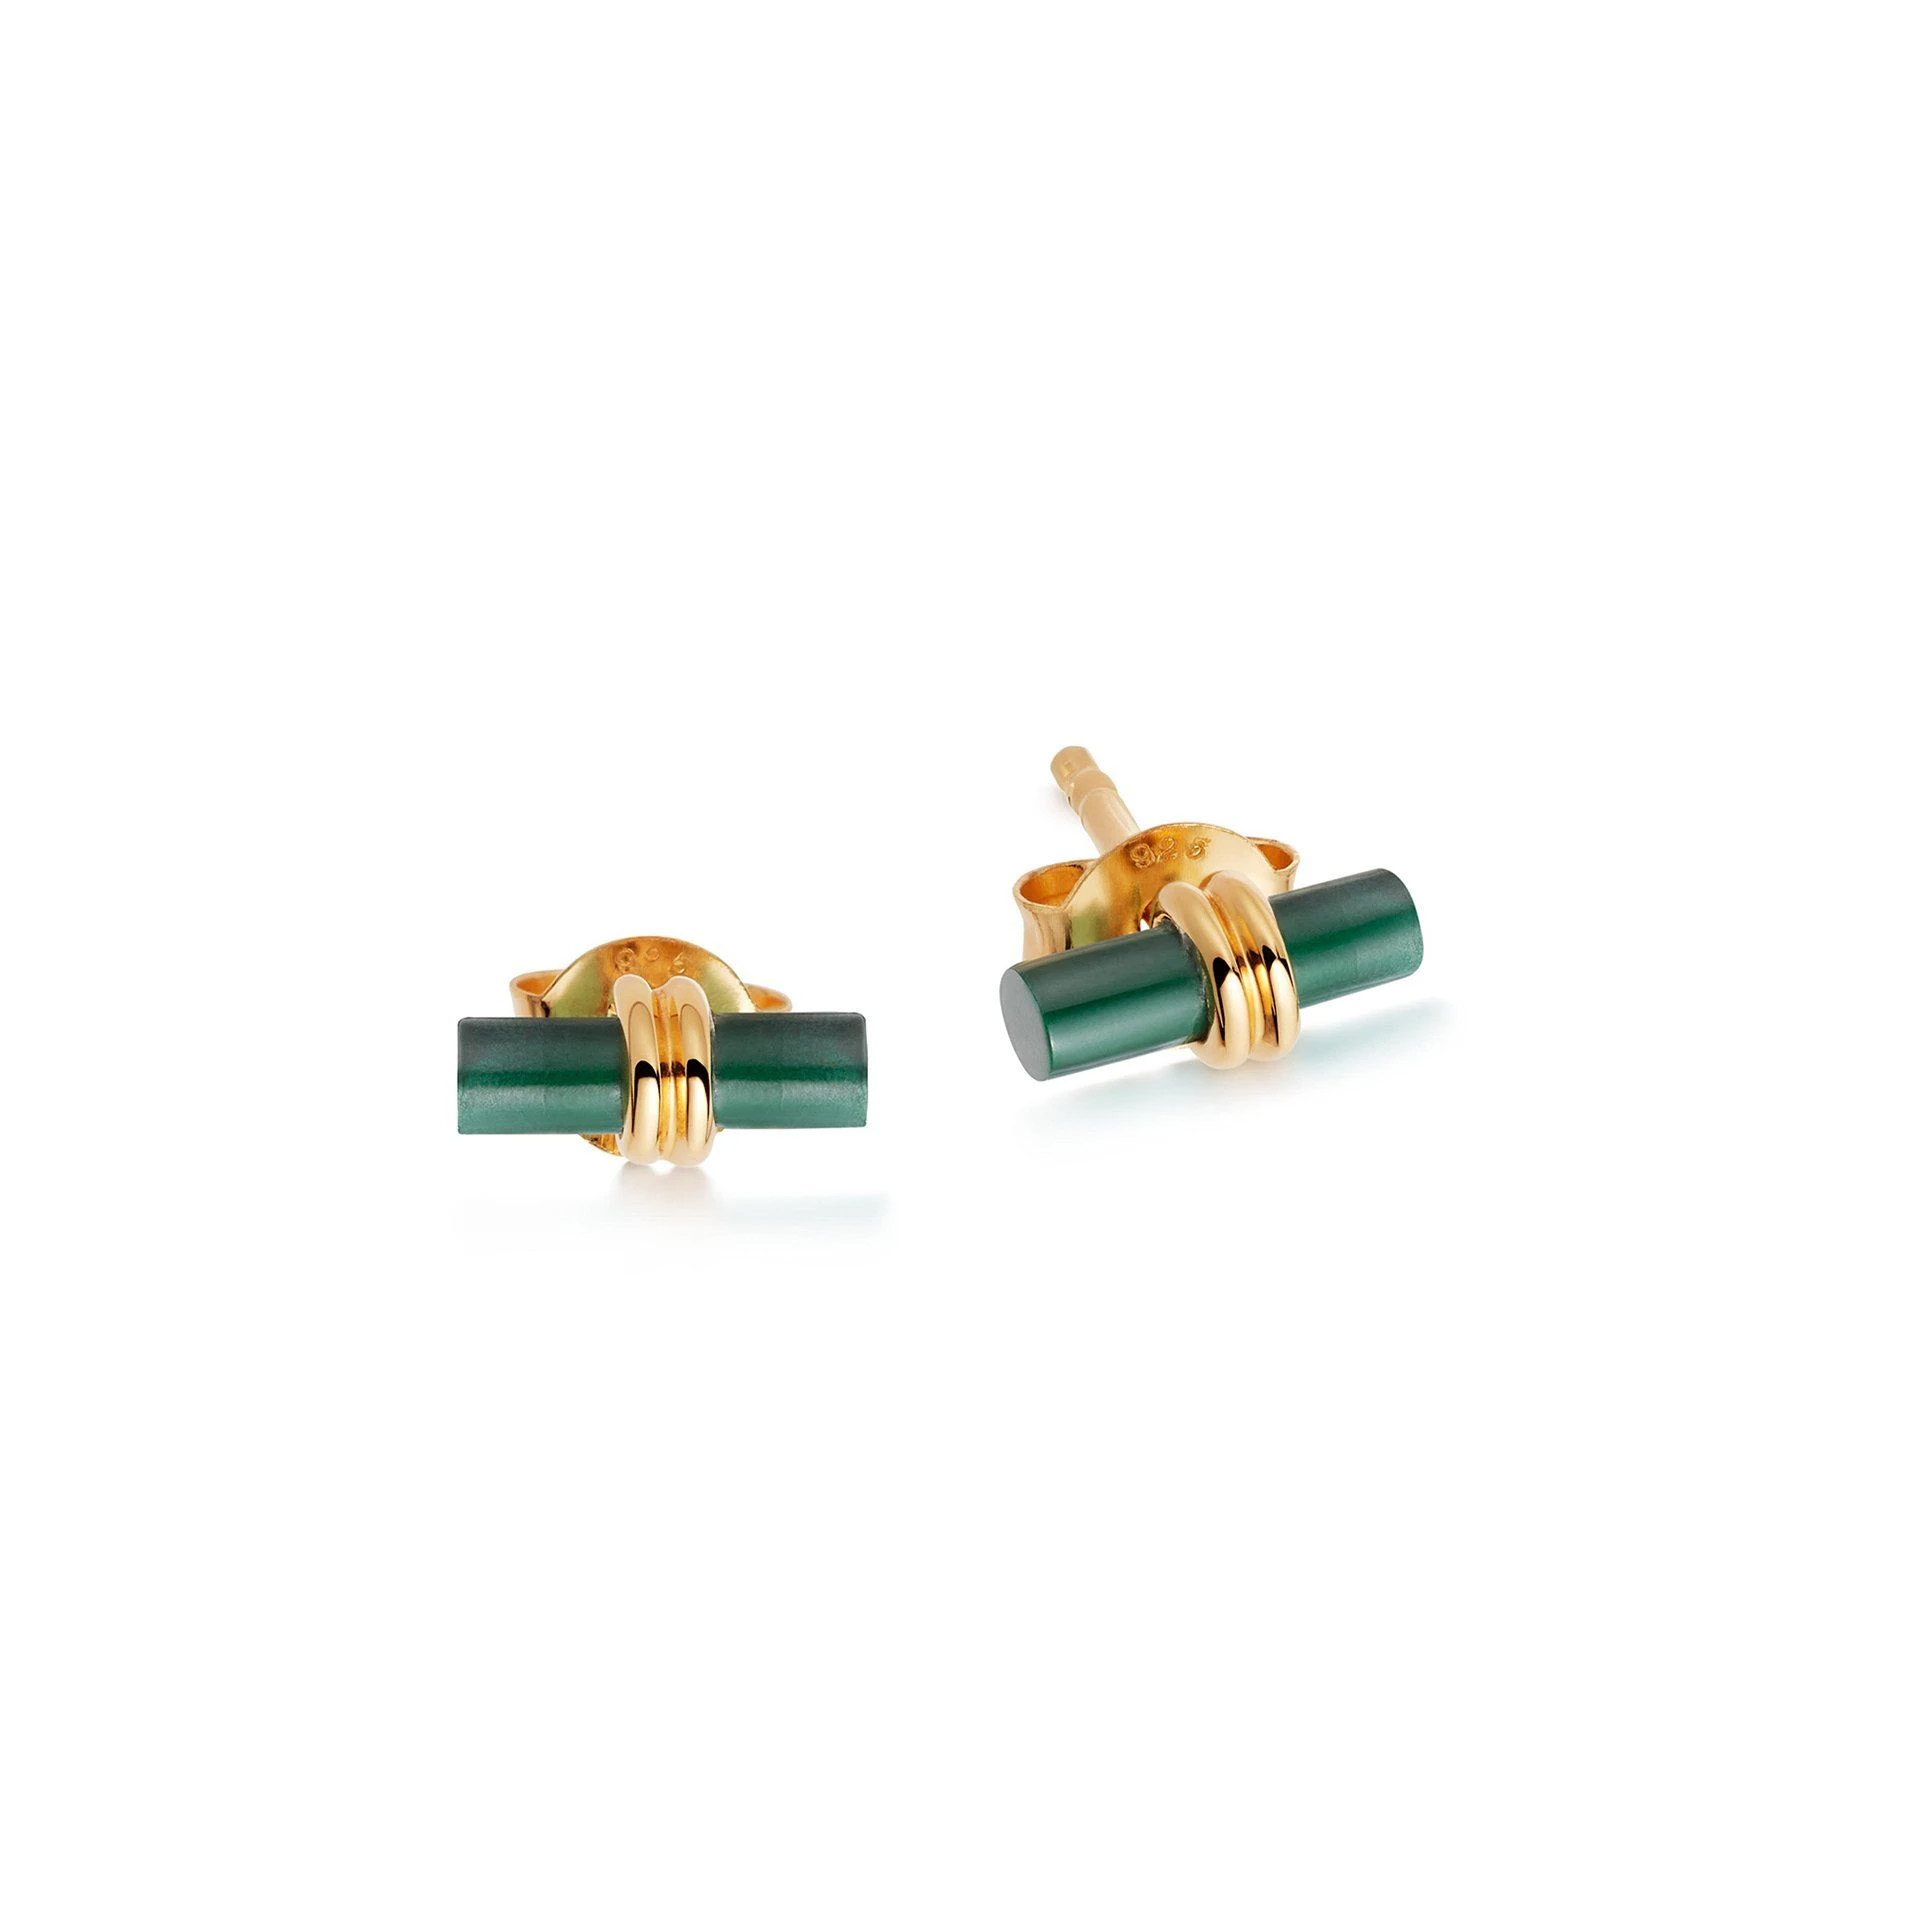 Engros OEM/ODM smykkedesign brugerdefinerede øreringe nitter grøn malakit sten i 18 karat guld vermeil sterling sølv oem service